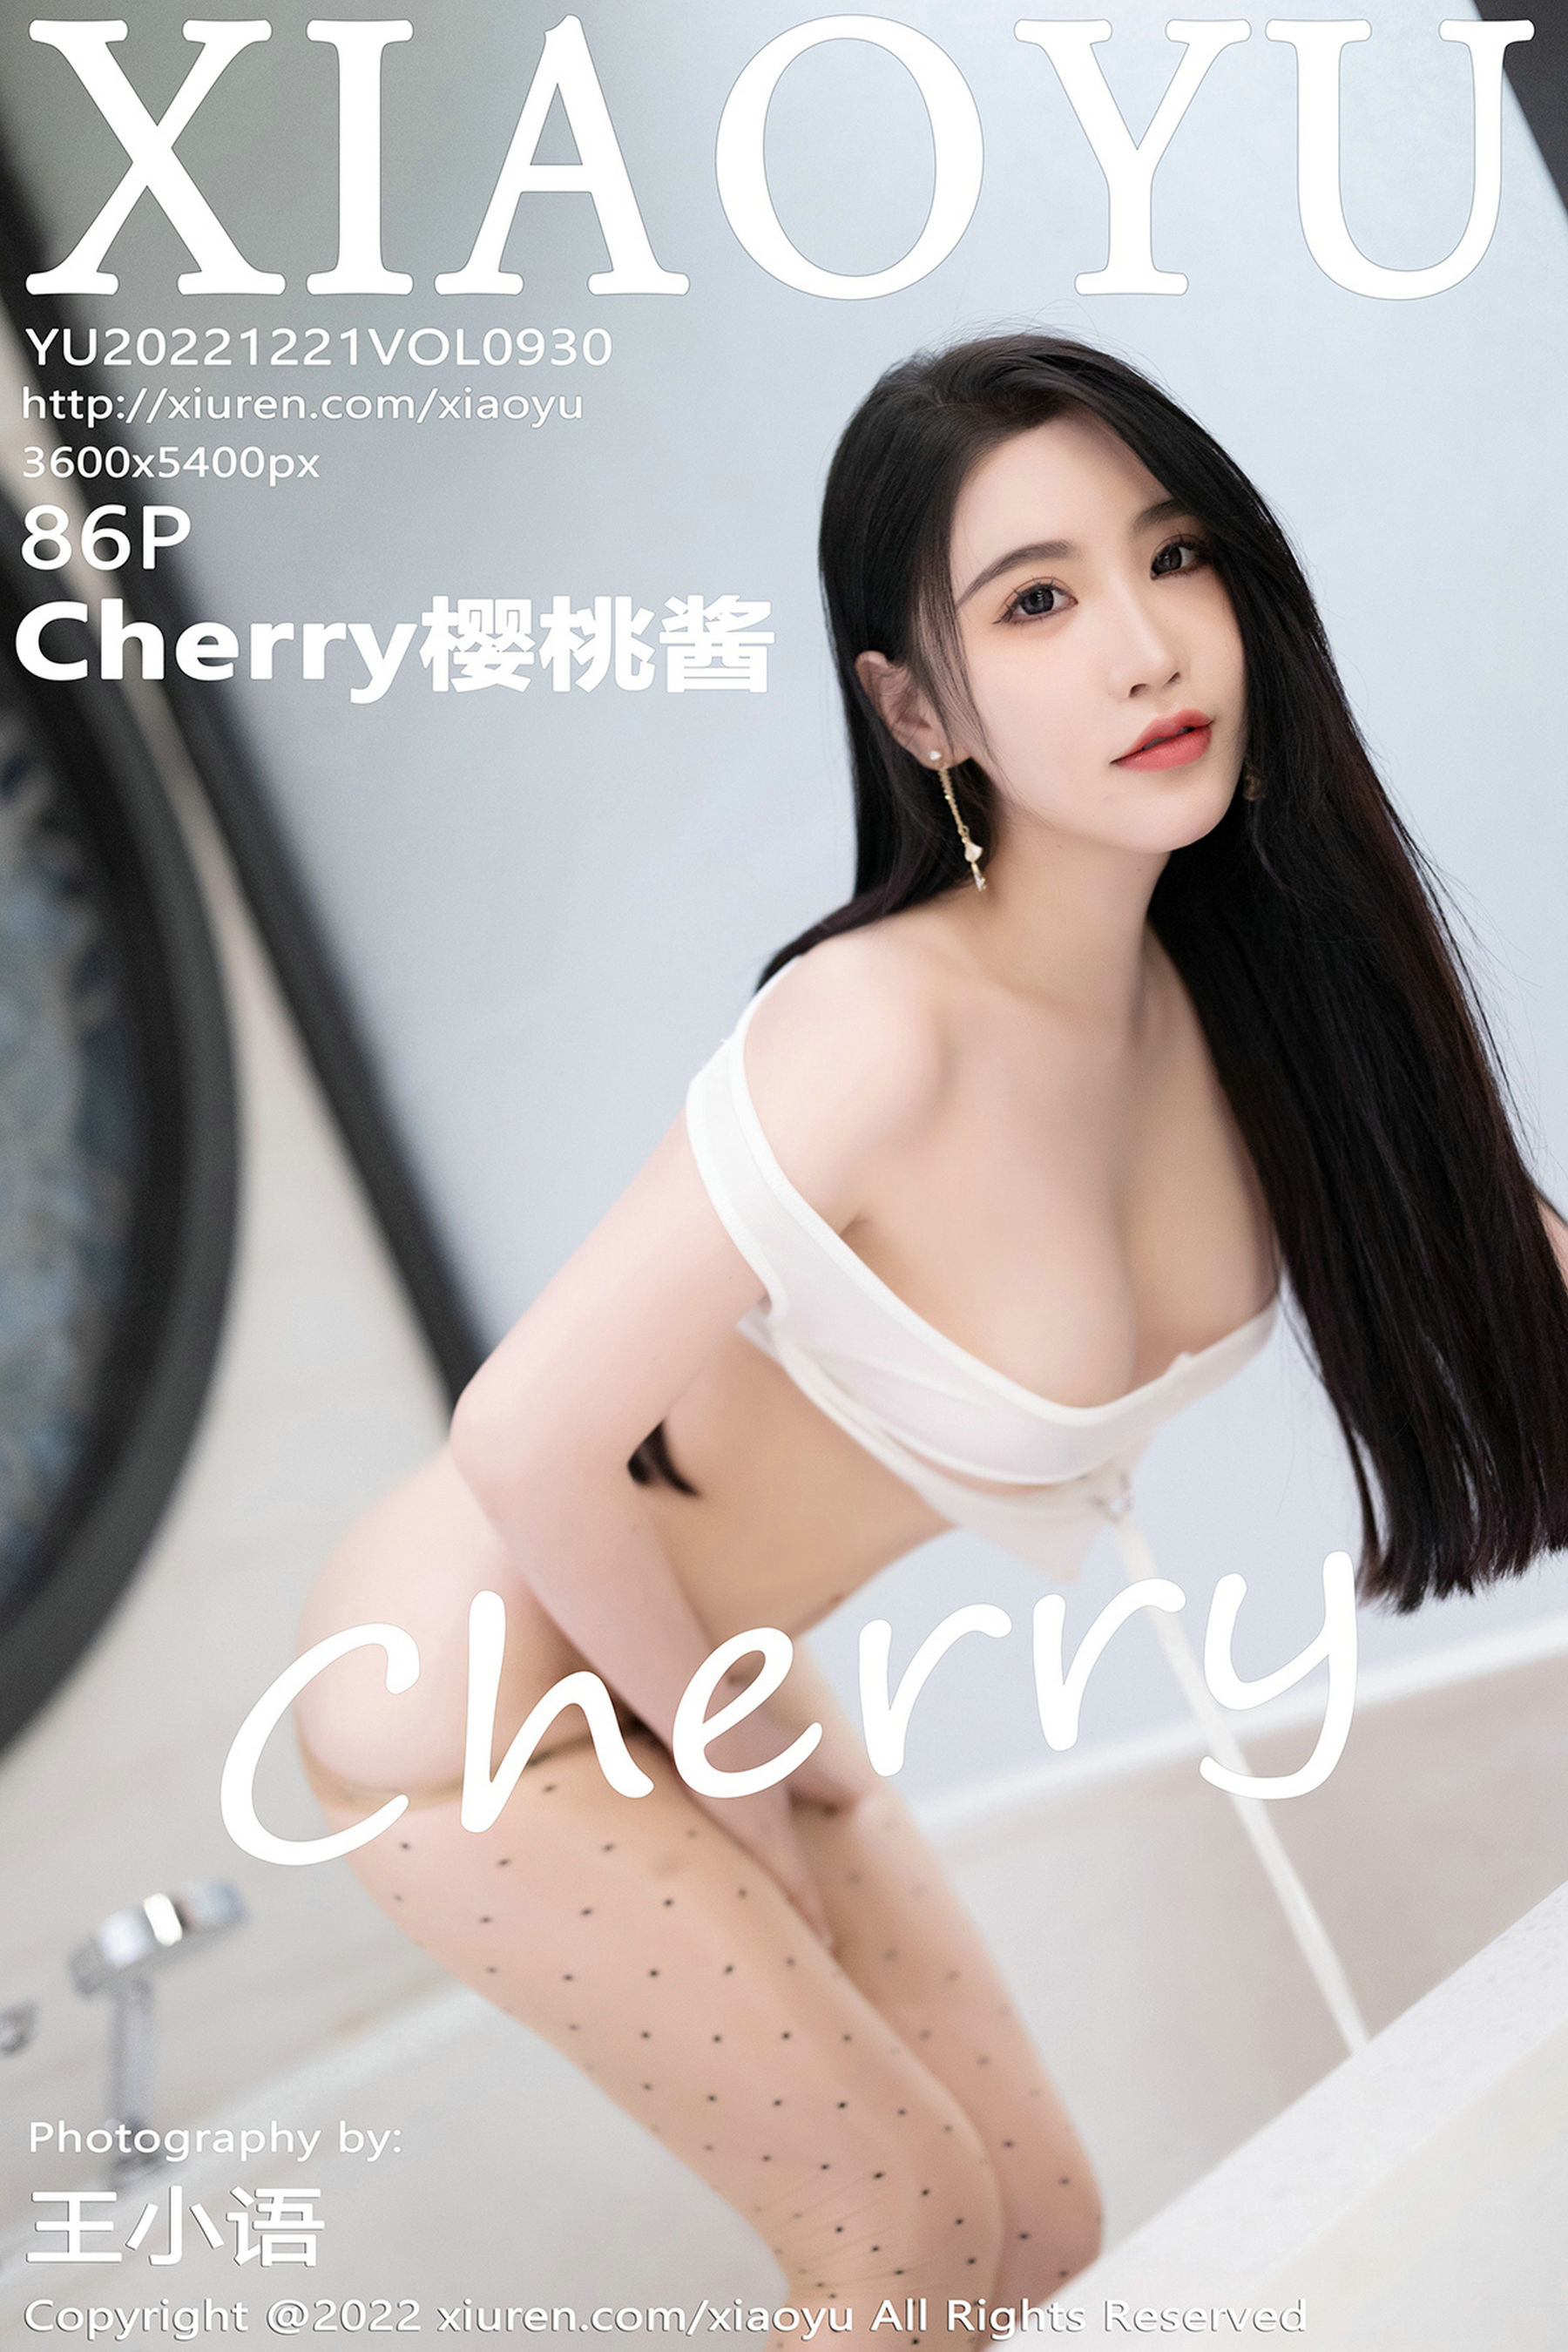 [语画界XIAOYU] Vol.930 Cherry樱桃酱1